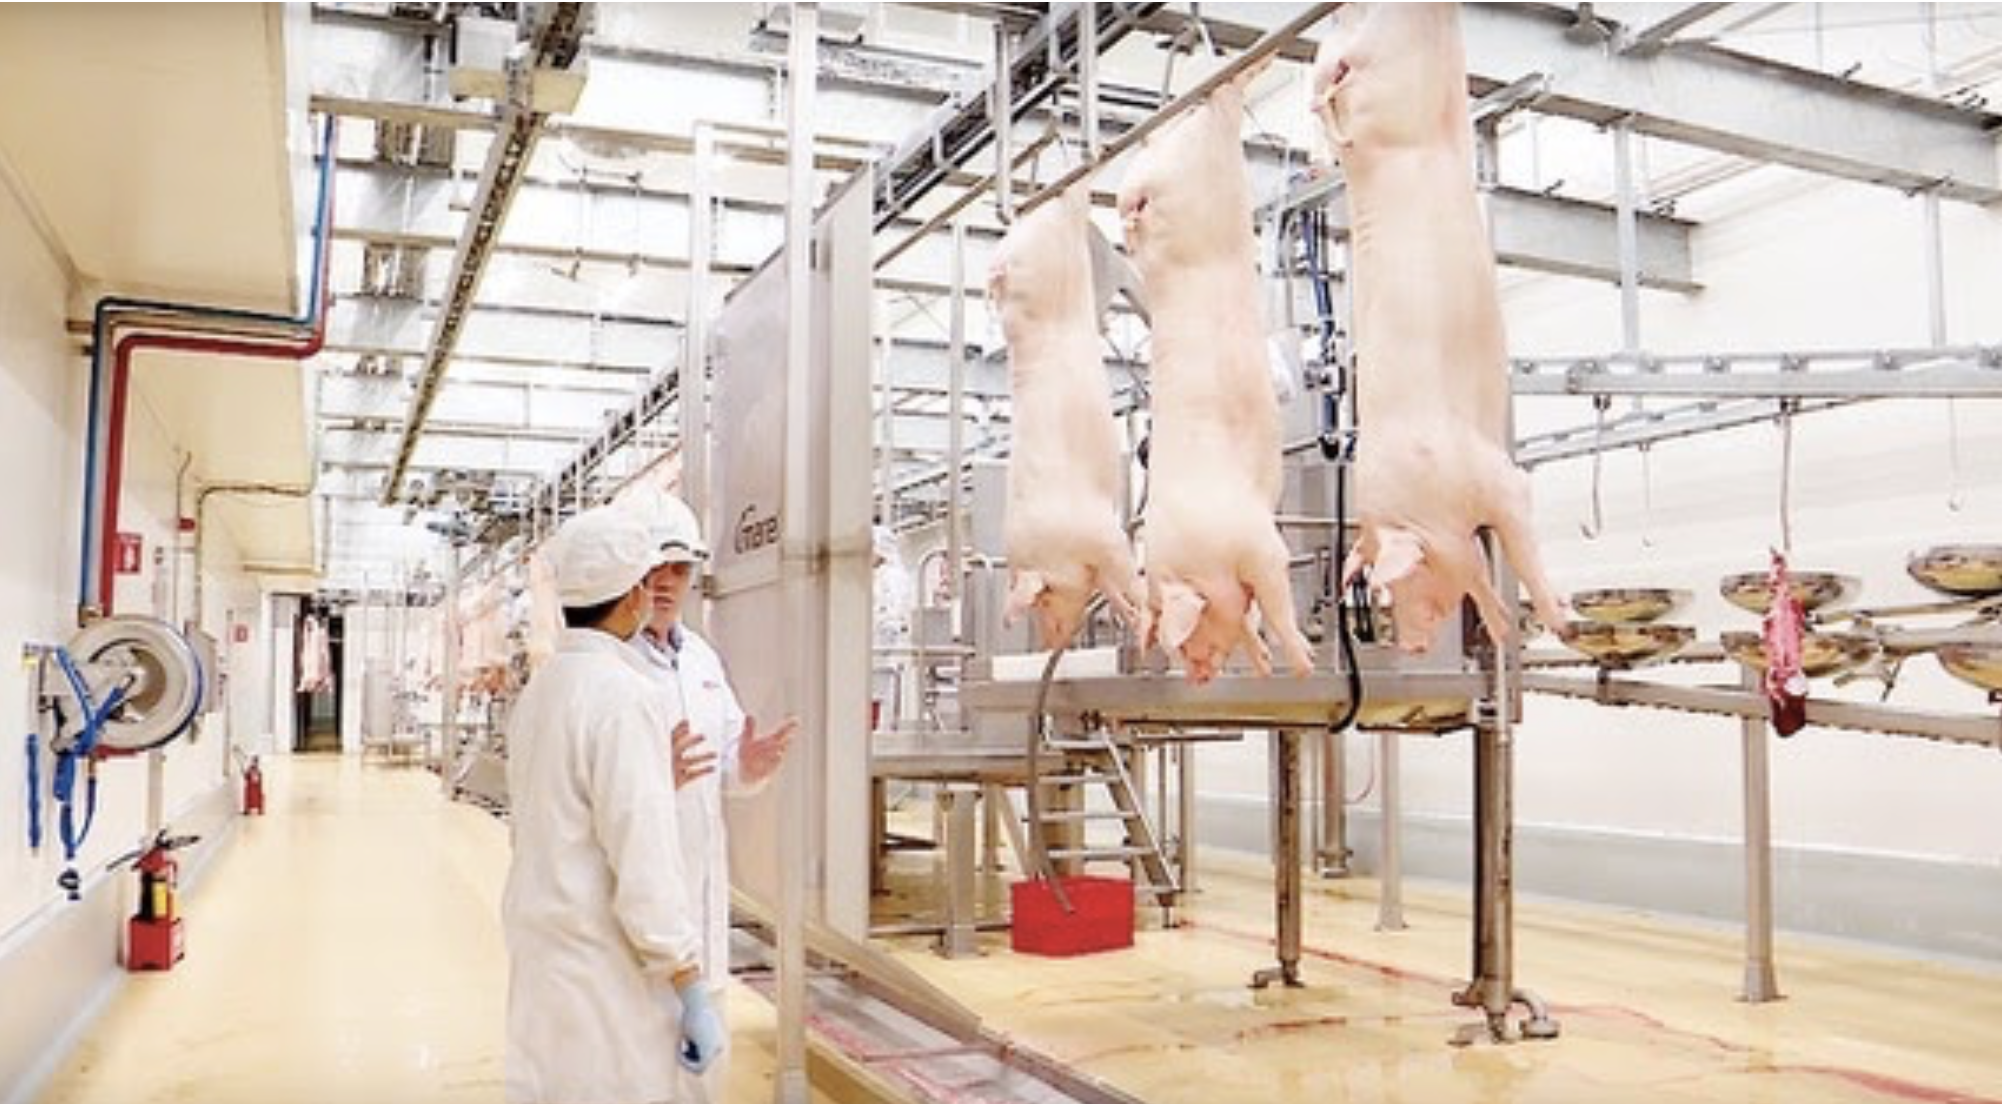 Thịt sạch và những yếu tố lựa chọn đạt chuẩn an toàn cho người tiêu dùng